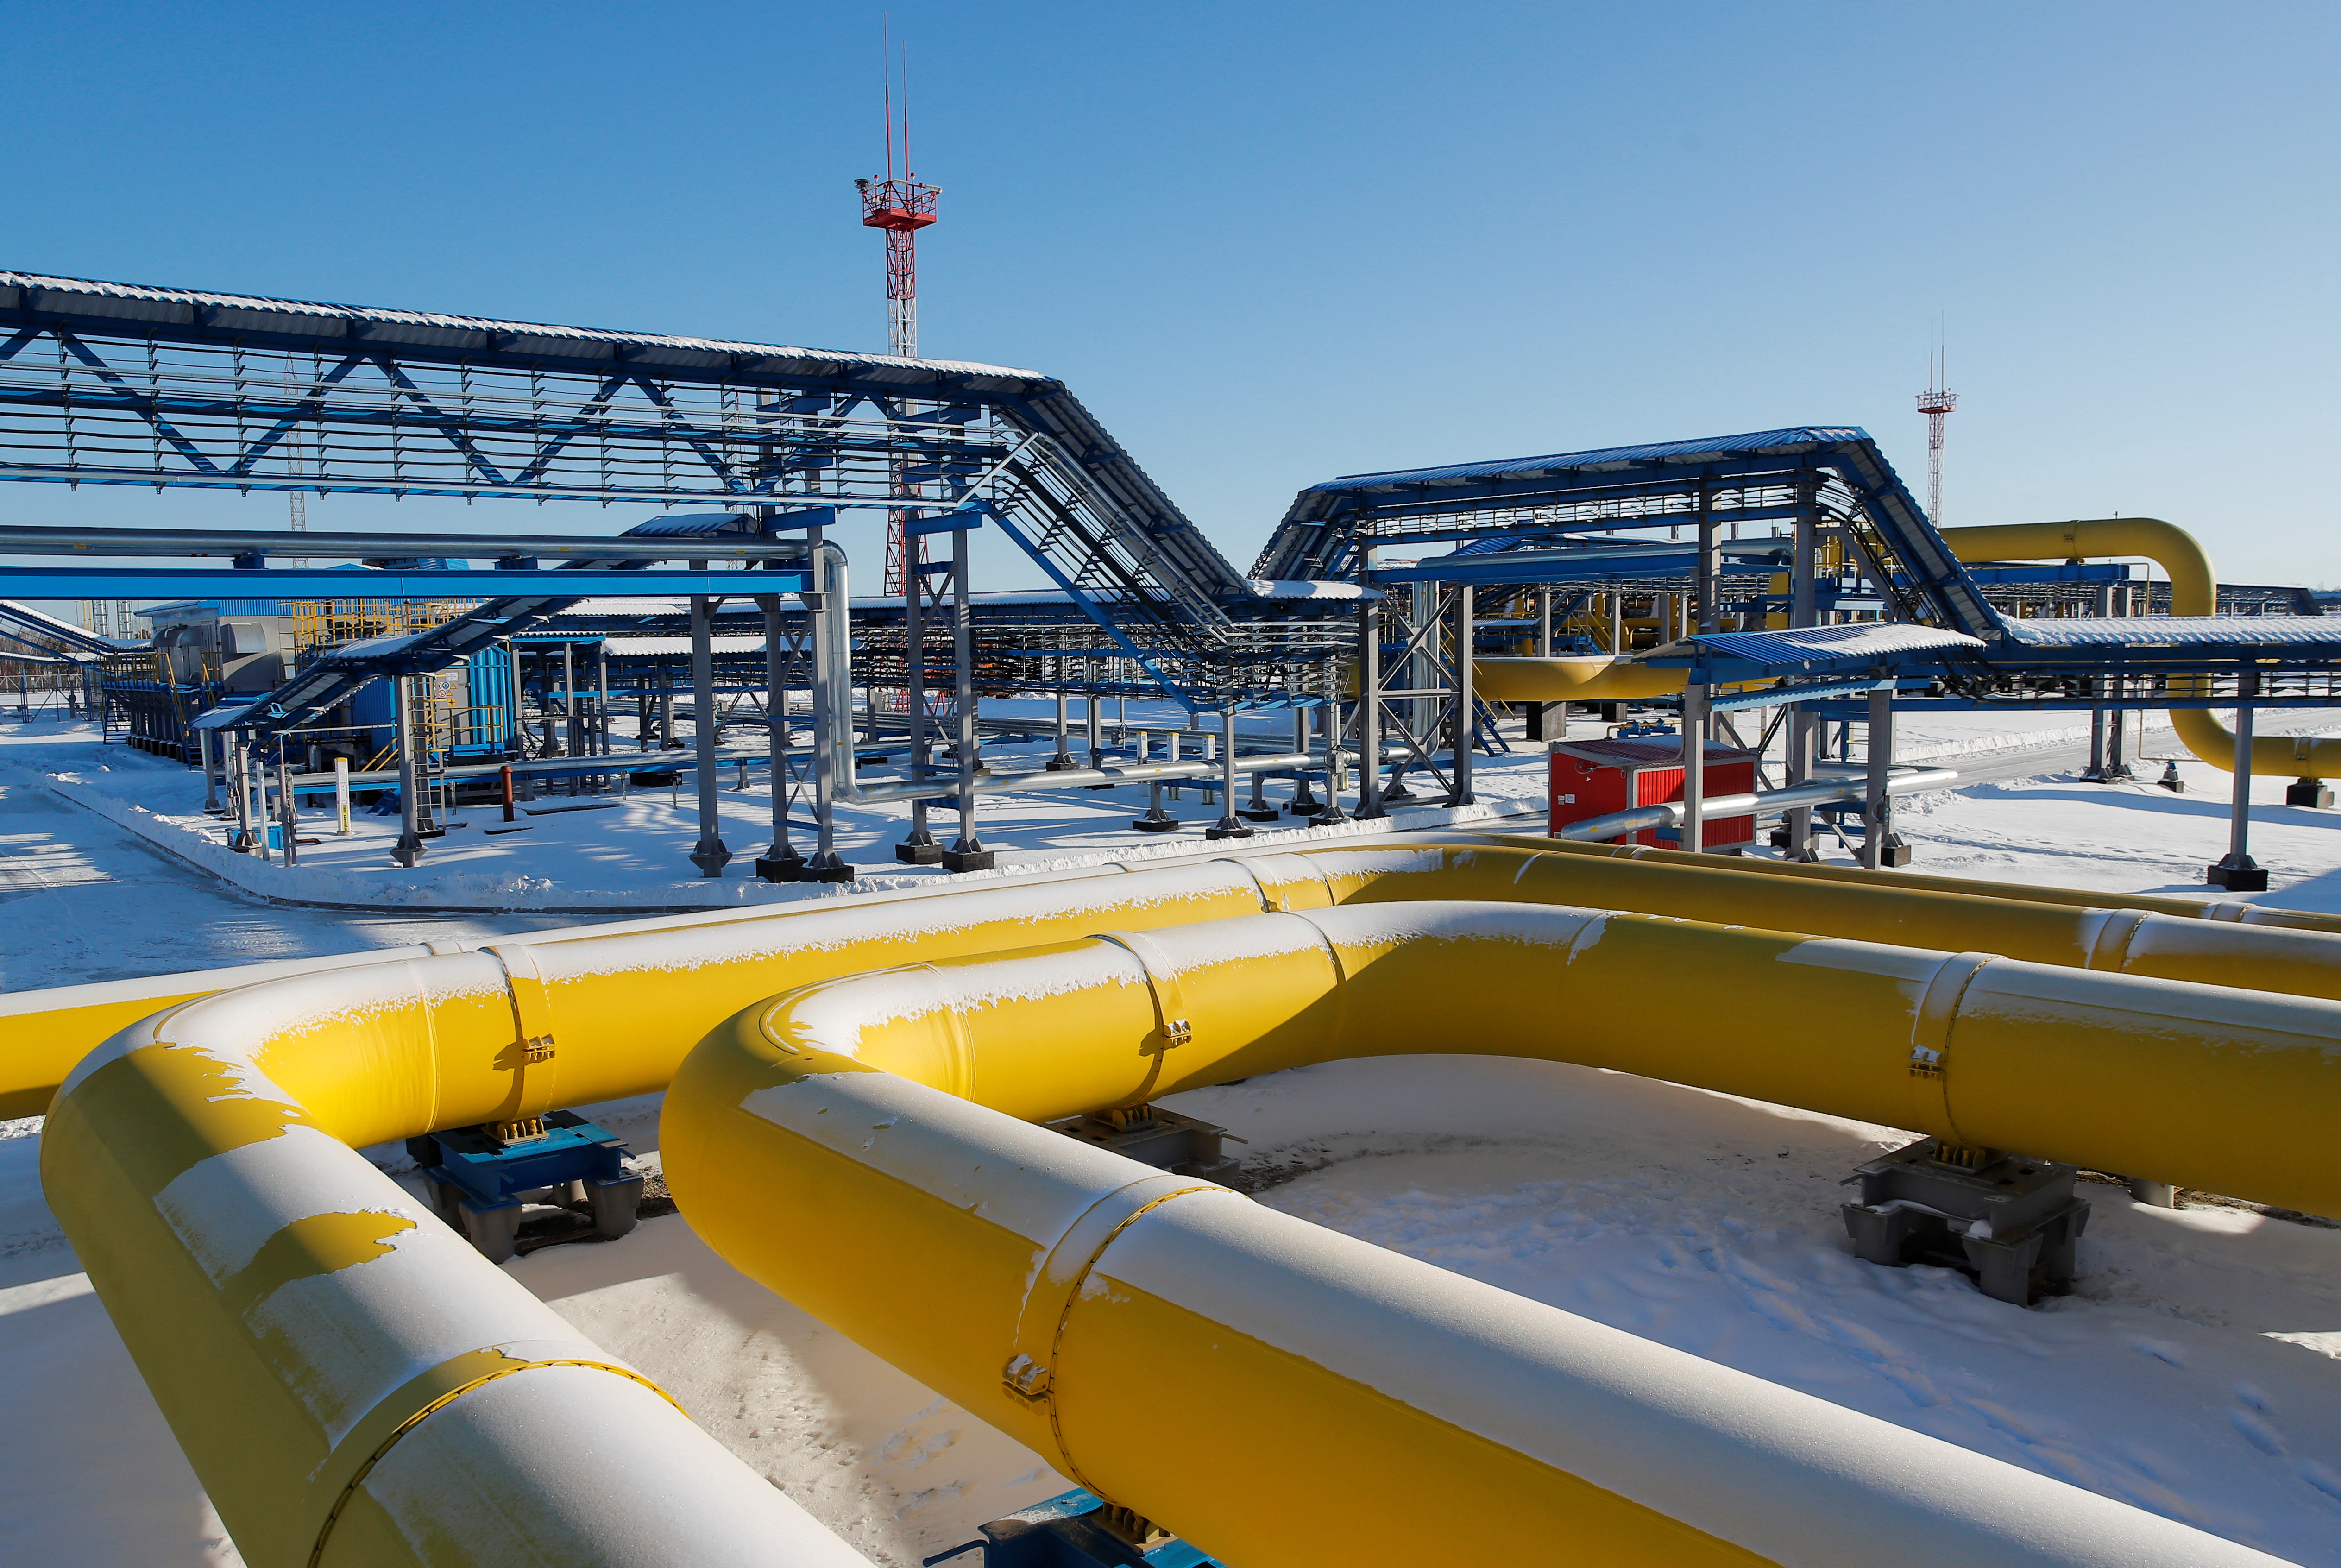 Des gazoducs sont photographiés à la station de compression d’Atamanskaya, installation du projet Power Of Siberia de Gazprom à l’extérieur de la ville de Svobodny, à l’extrême est du pays.